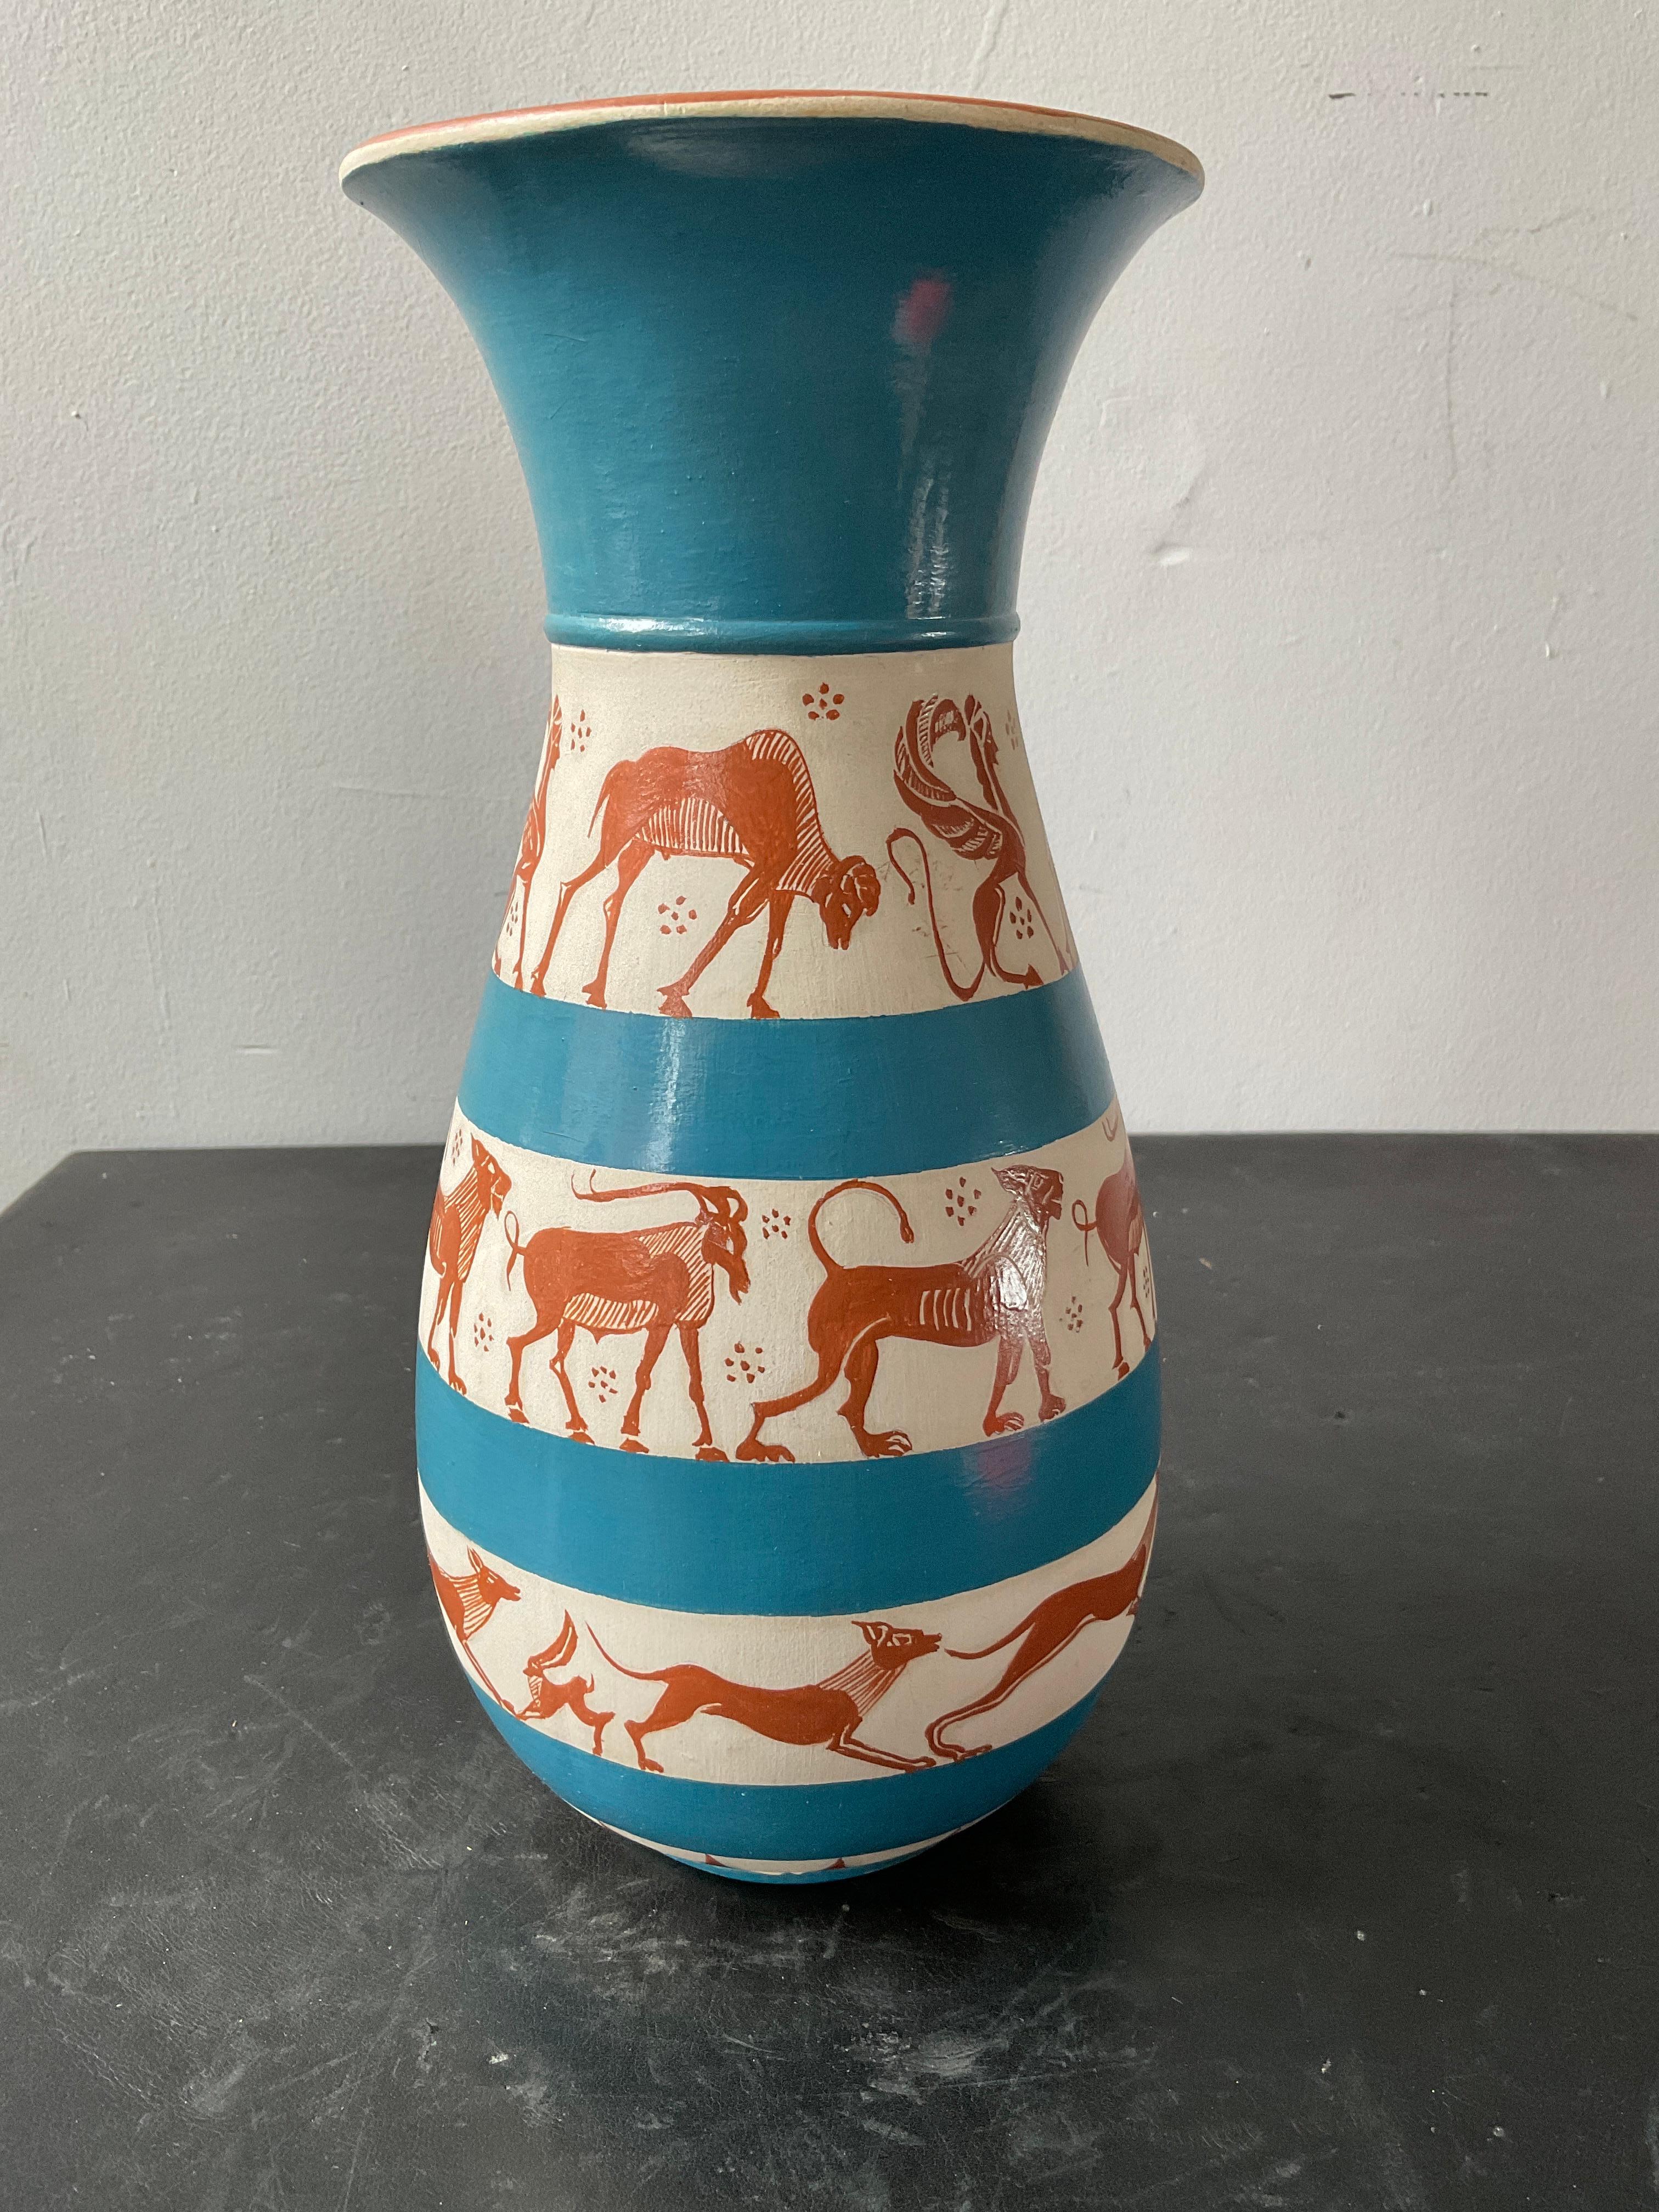 Arbib hand painted ceramic vase, dated 1975.